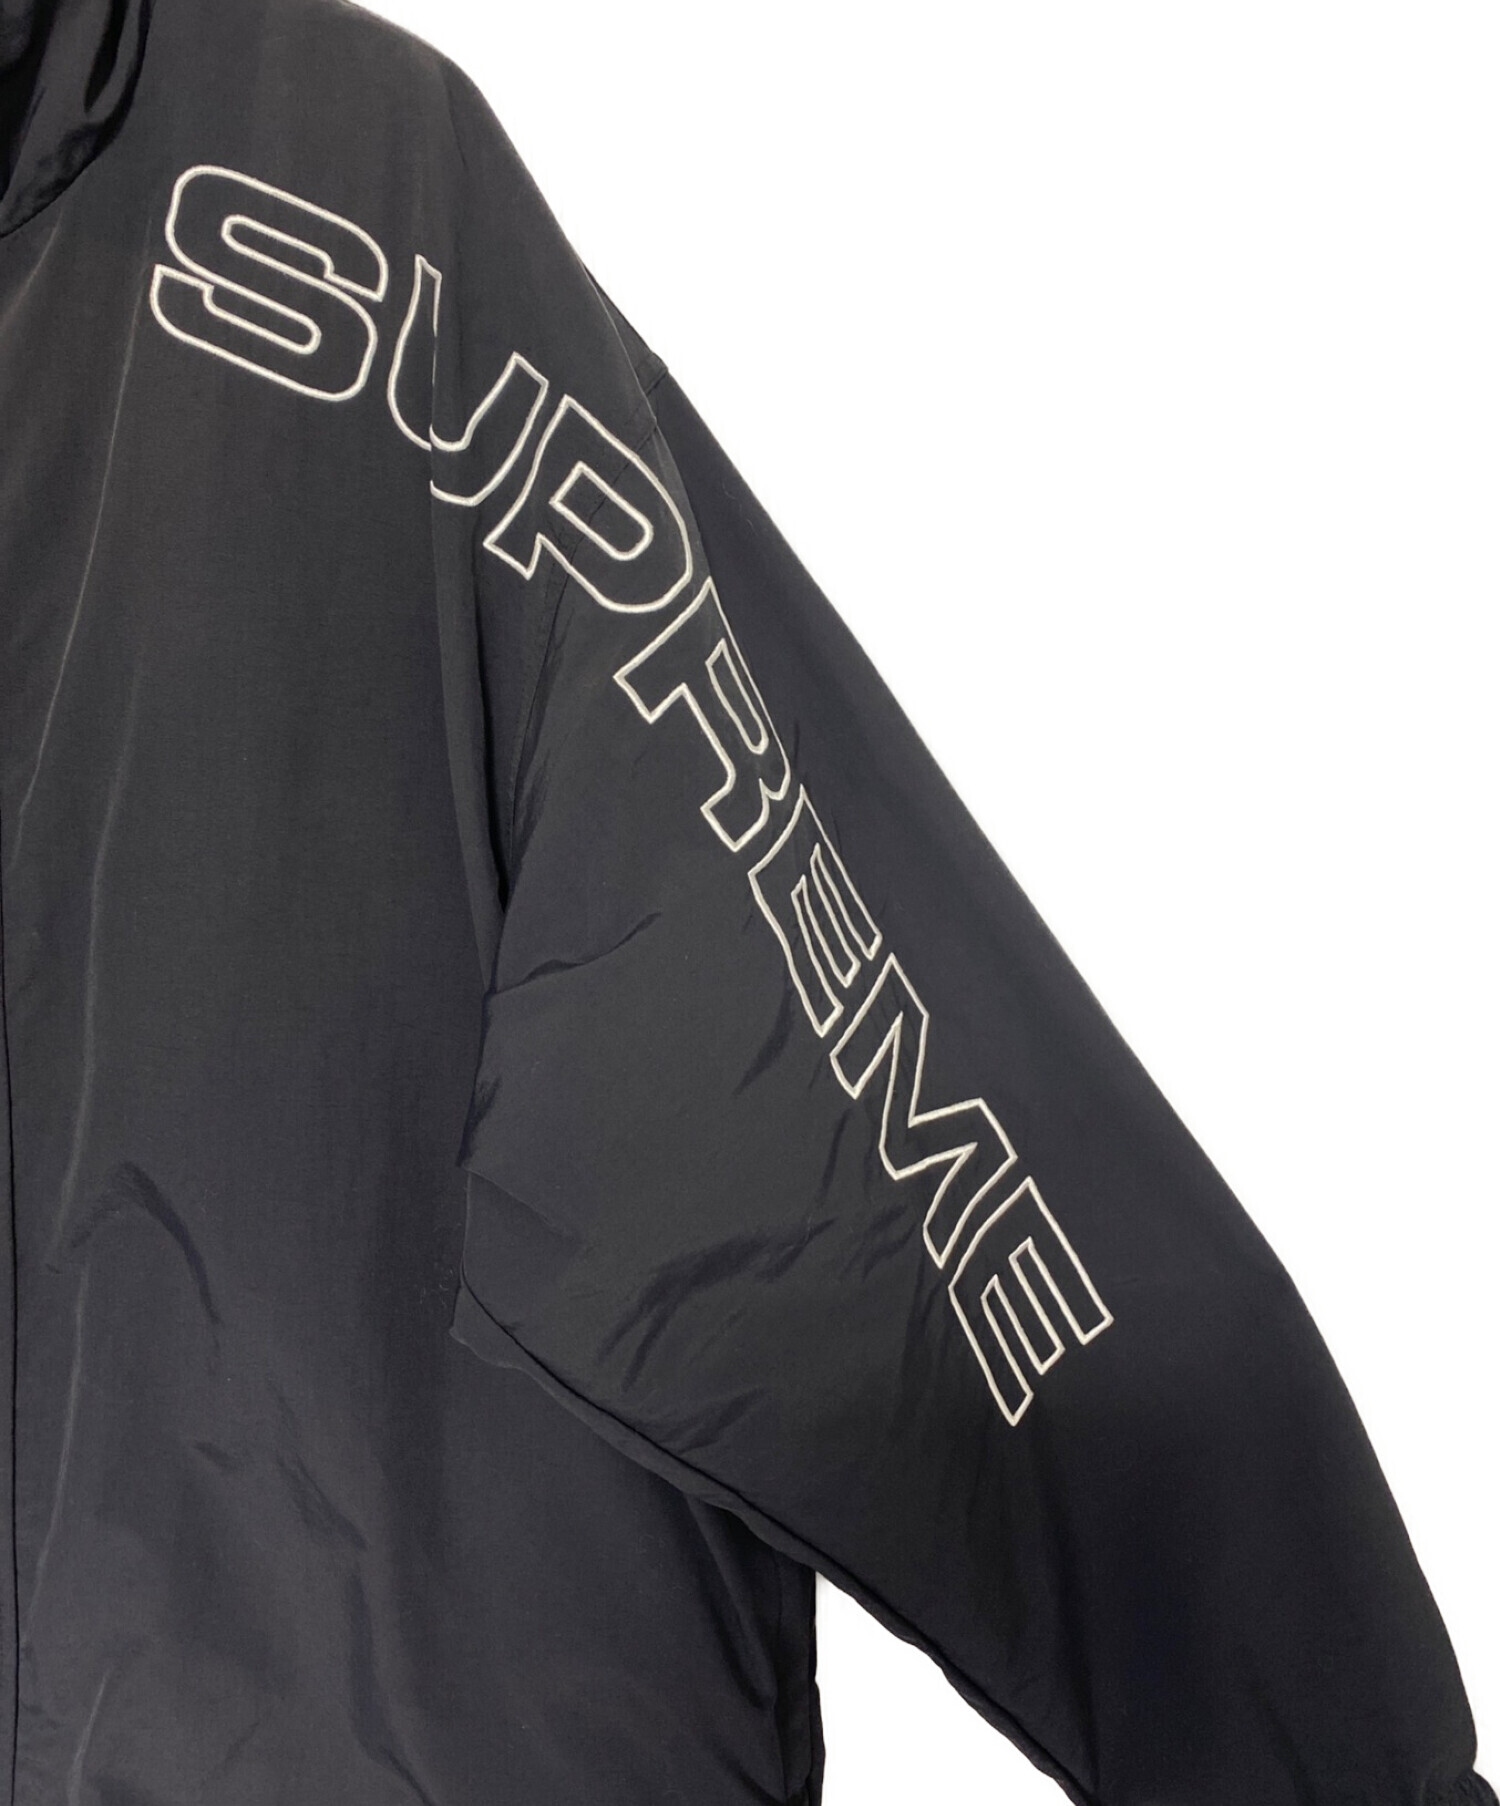 新品 Lサイズ supreme spellout track jacket 黒